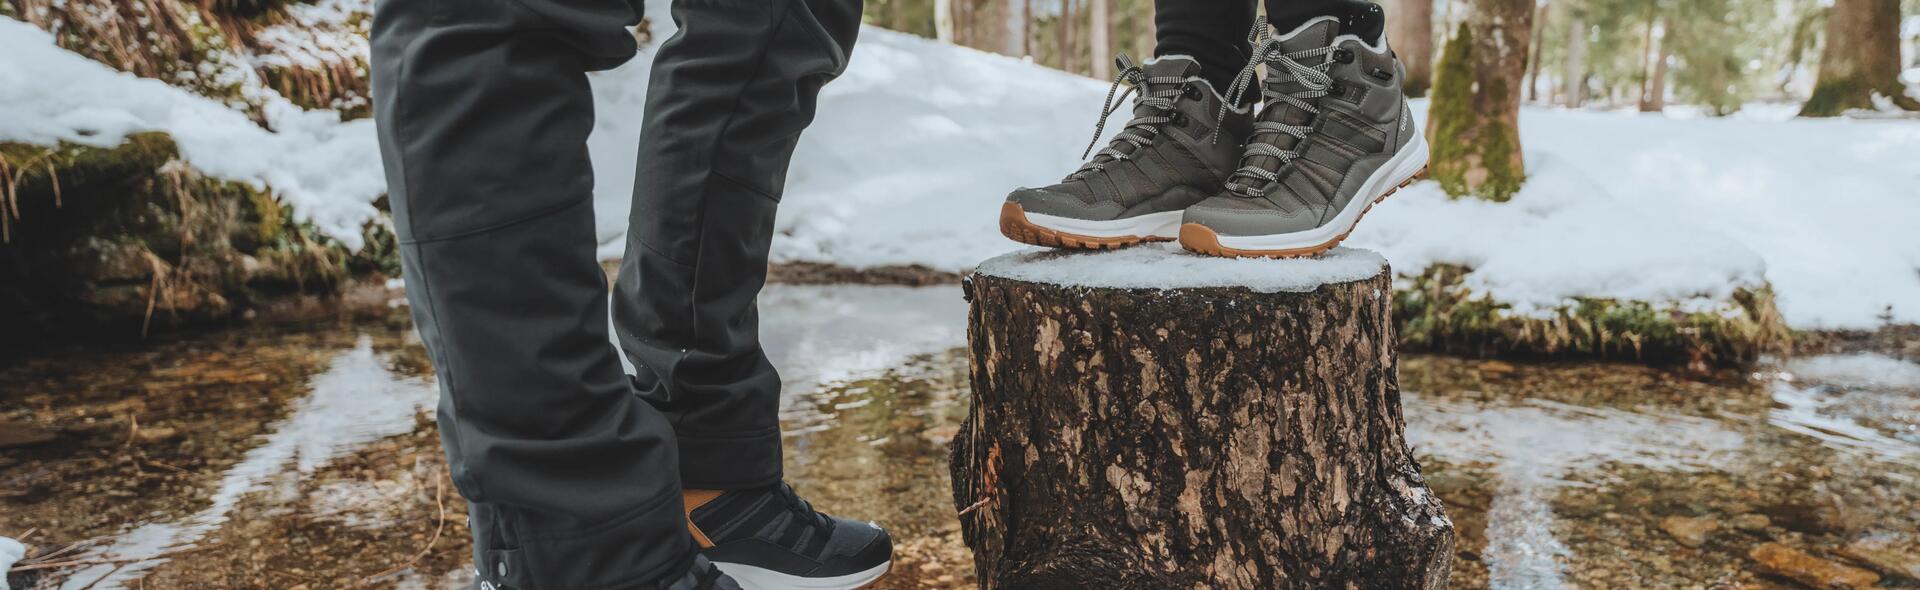 escolher calçado de caminhada no inverno